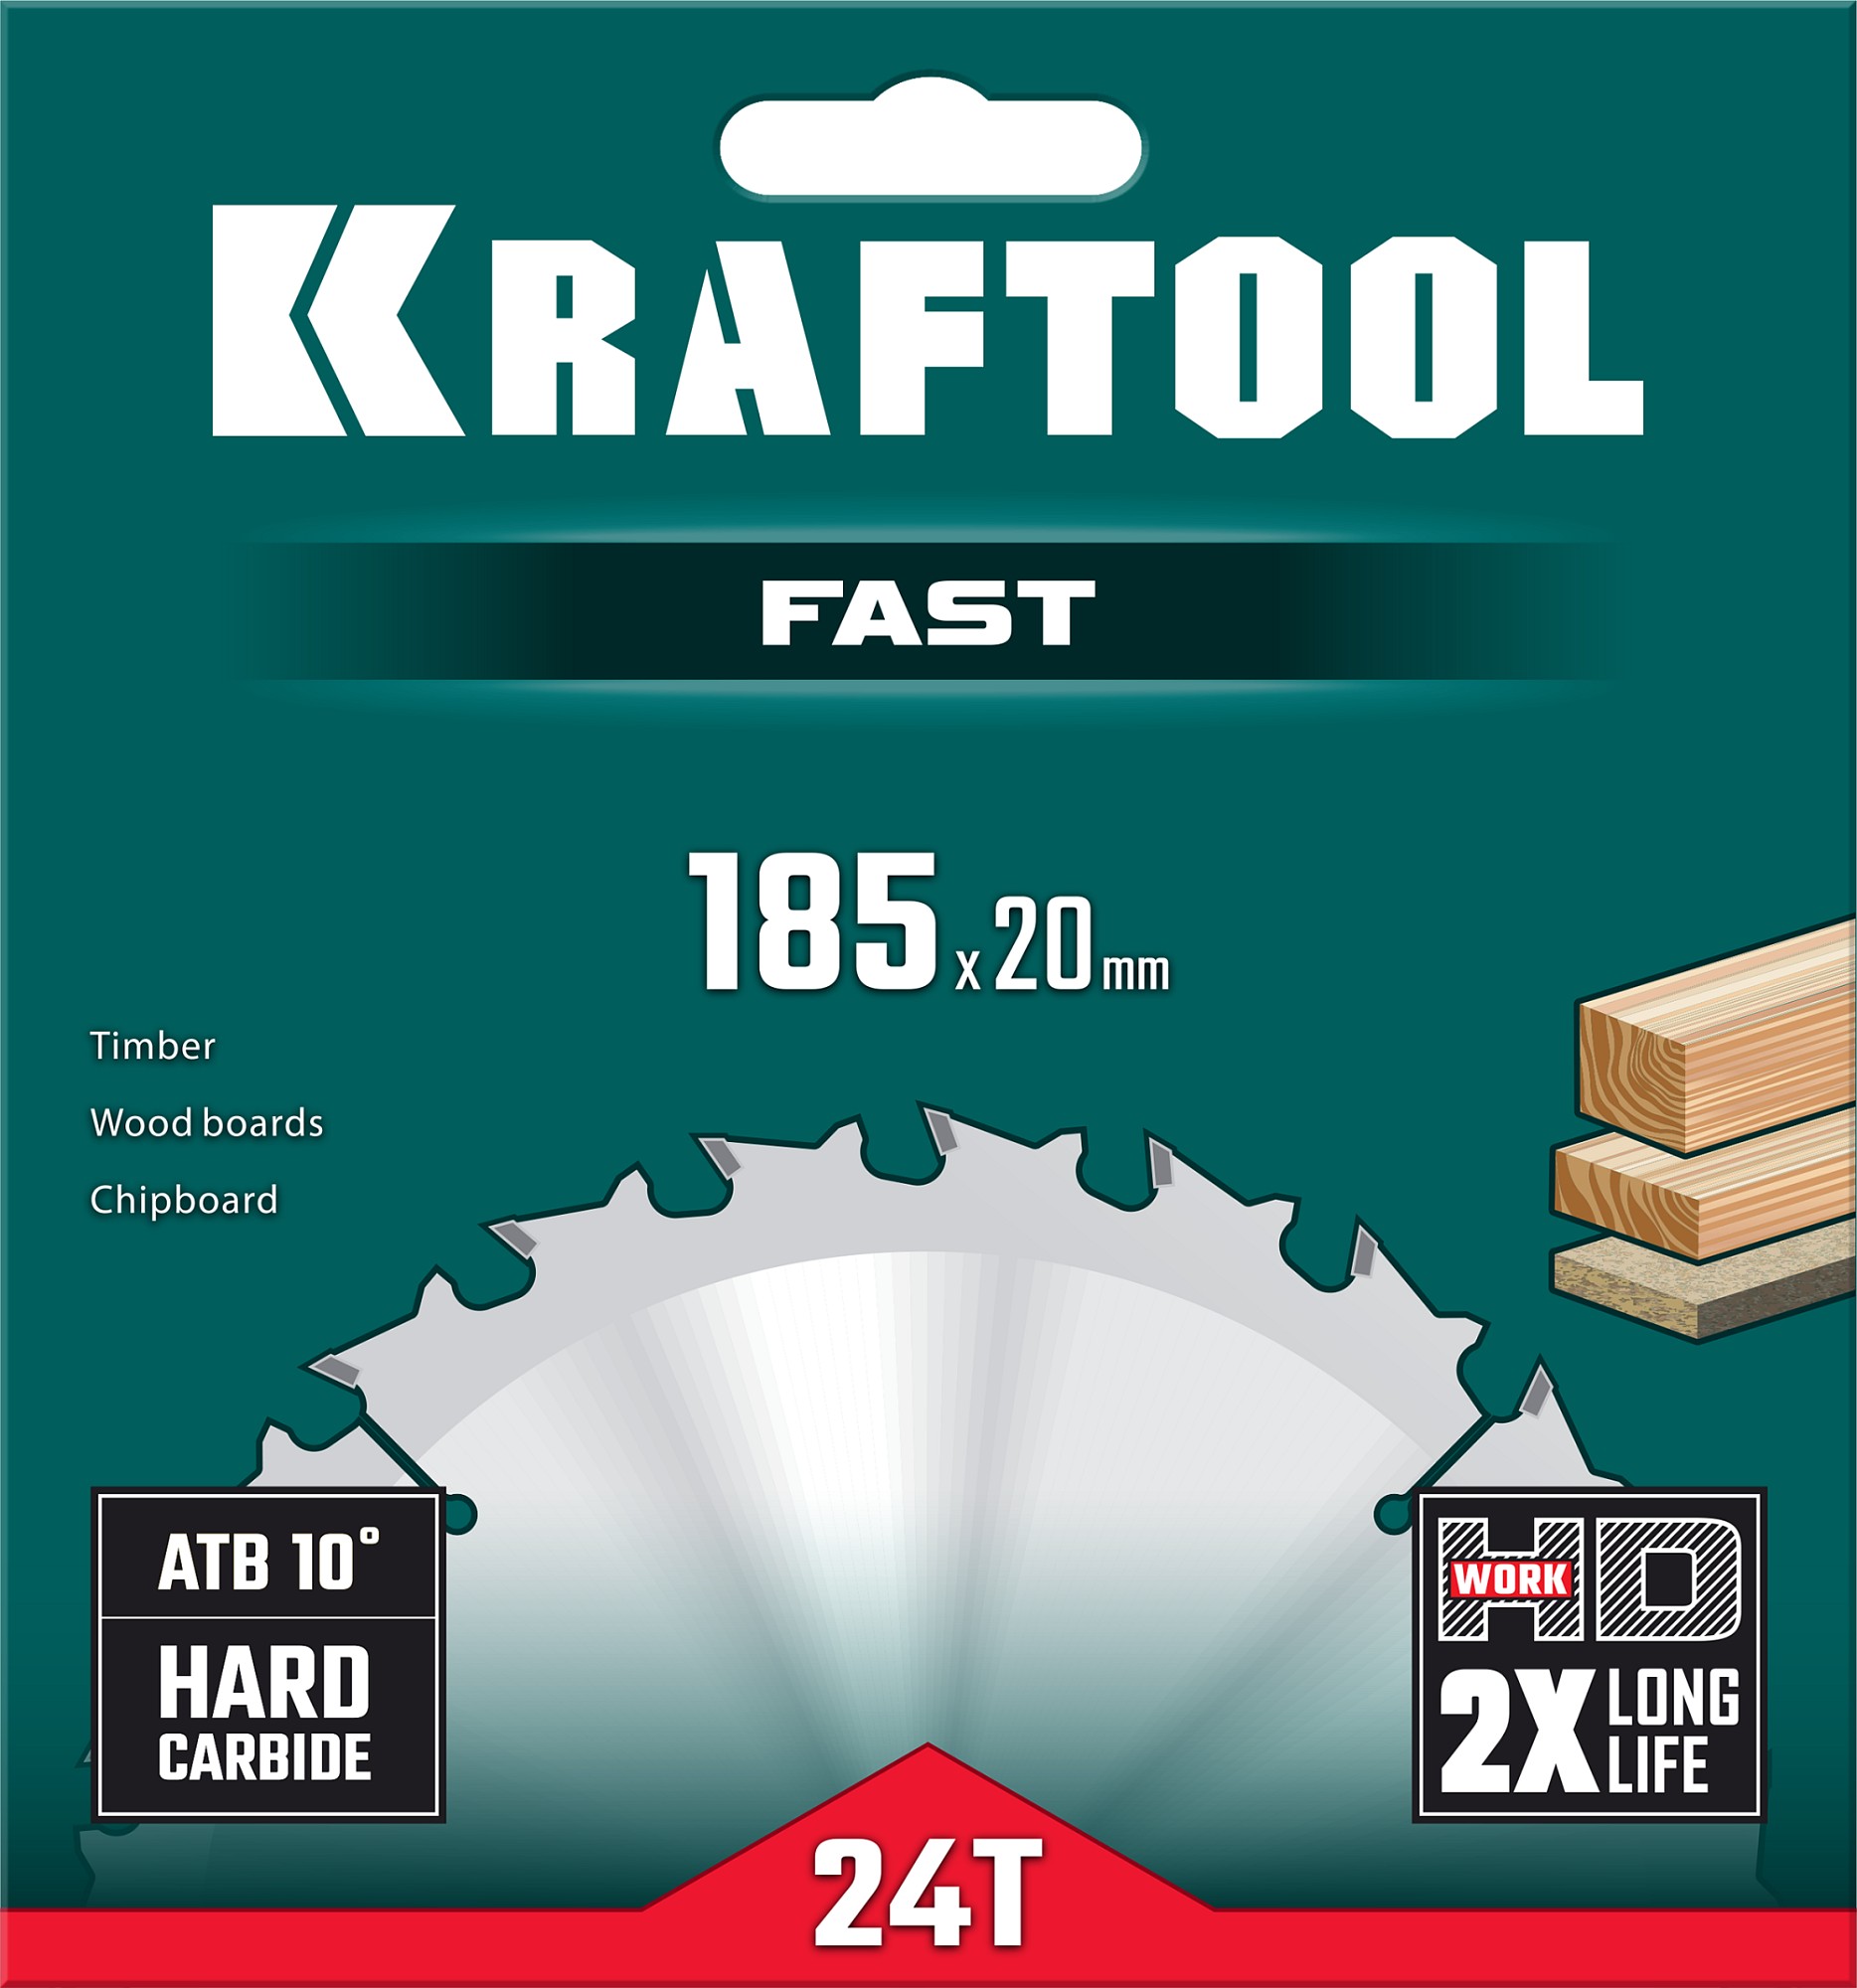 KRAFTOOL Fast, 185 х 20 мм, 24Т, пильный диск по дереву (36950-185-20)